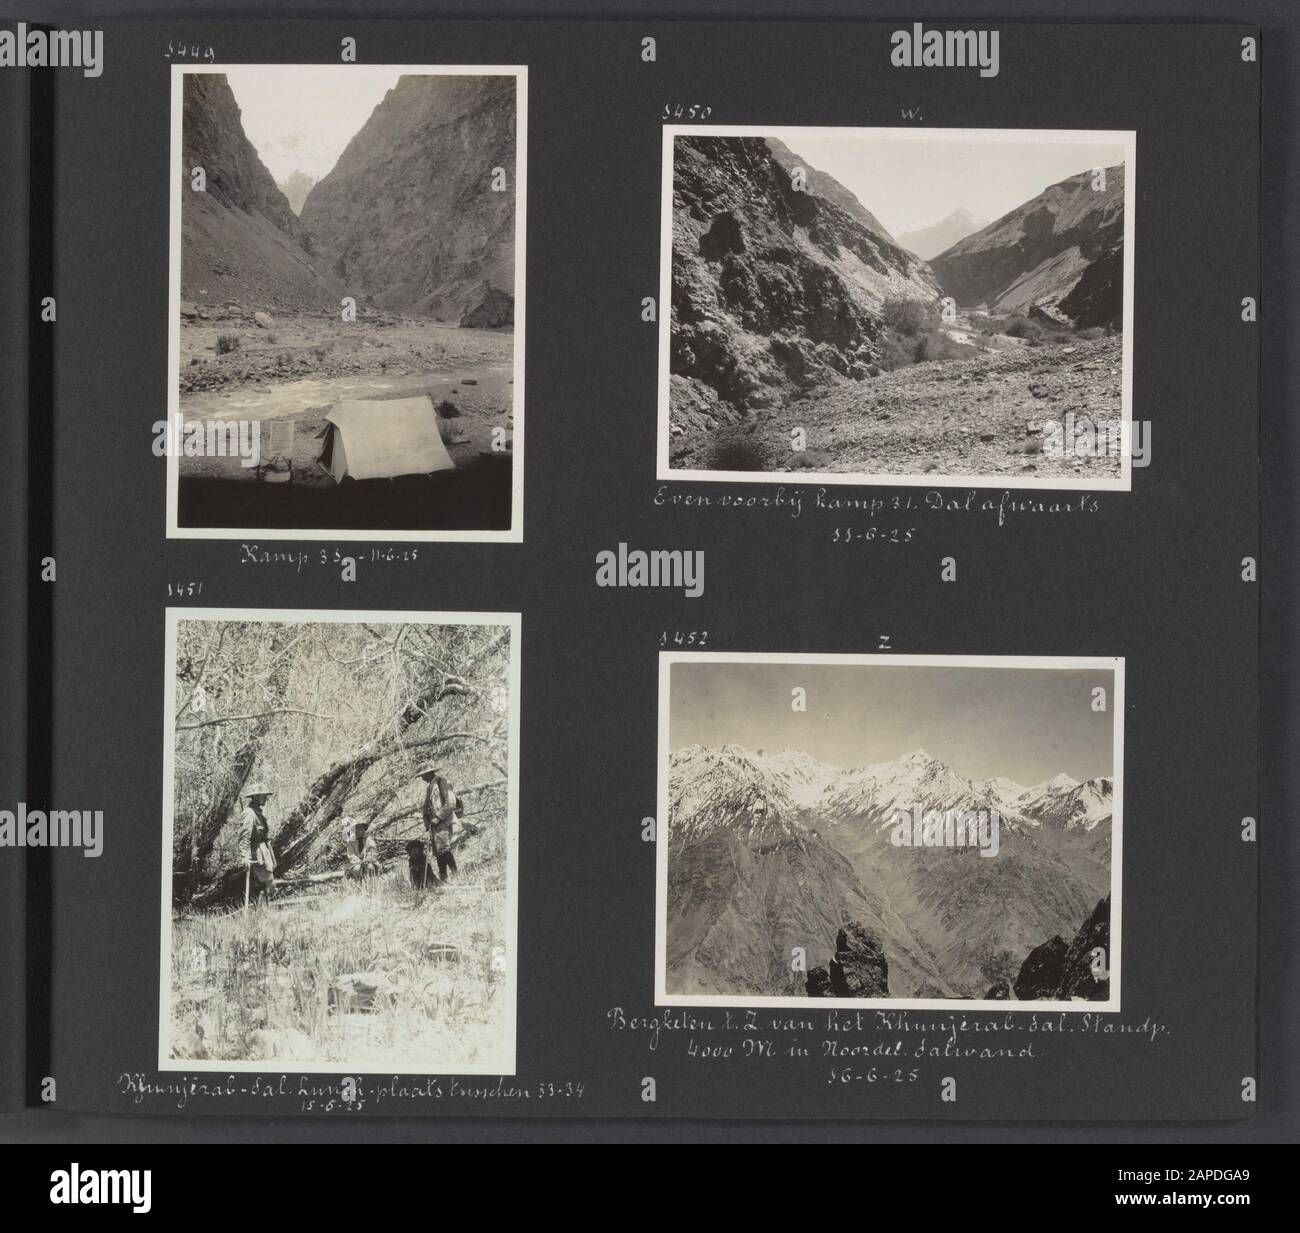 Álbum de fotos Fisherman: Segunda expedición Karakorum Descripción: Hoja de álbum con cuatro fotos. Arriba a la izquierda: Una tienda en Camp 30. Arriba a la derecha: Vista cuesta abajo justo después del campamento 31. Abajo a la izquierda: El lugar de almuerzo en el valle de Khunjirab entre los campamentos 33 y 34, incluyendo Jenny Visser-Hooft y el perro Patiala. Abajo a la derecha: La cordillera al sur del valle de Khunjirab, tomada a 4000 metros de altitud en el muro del valle norte anotación: El perro Patiala, un Mastiff tibetano, fue un regalo del Maharaja de Patiala a Jenny Visser-Hooft en 1925 Fecha: 1 de enero de 1925 ubicación: Karakorum, Khunjirab, Pakistán Foto de stock